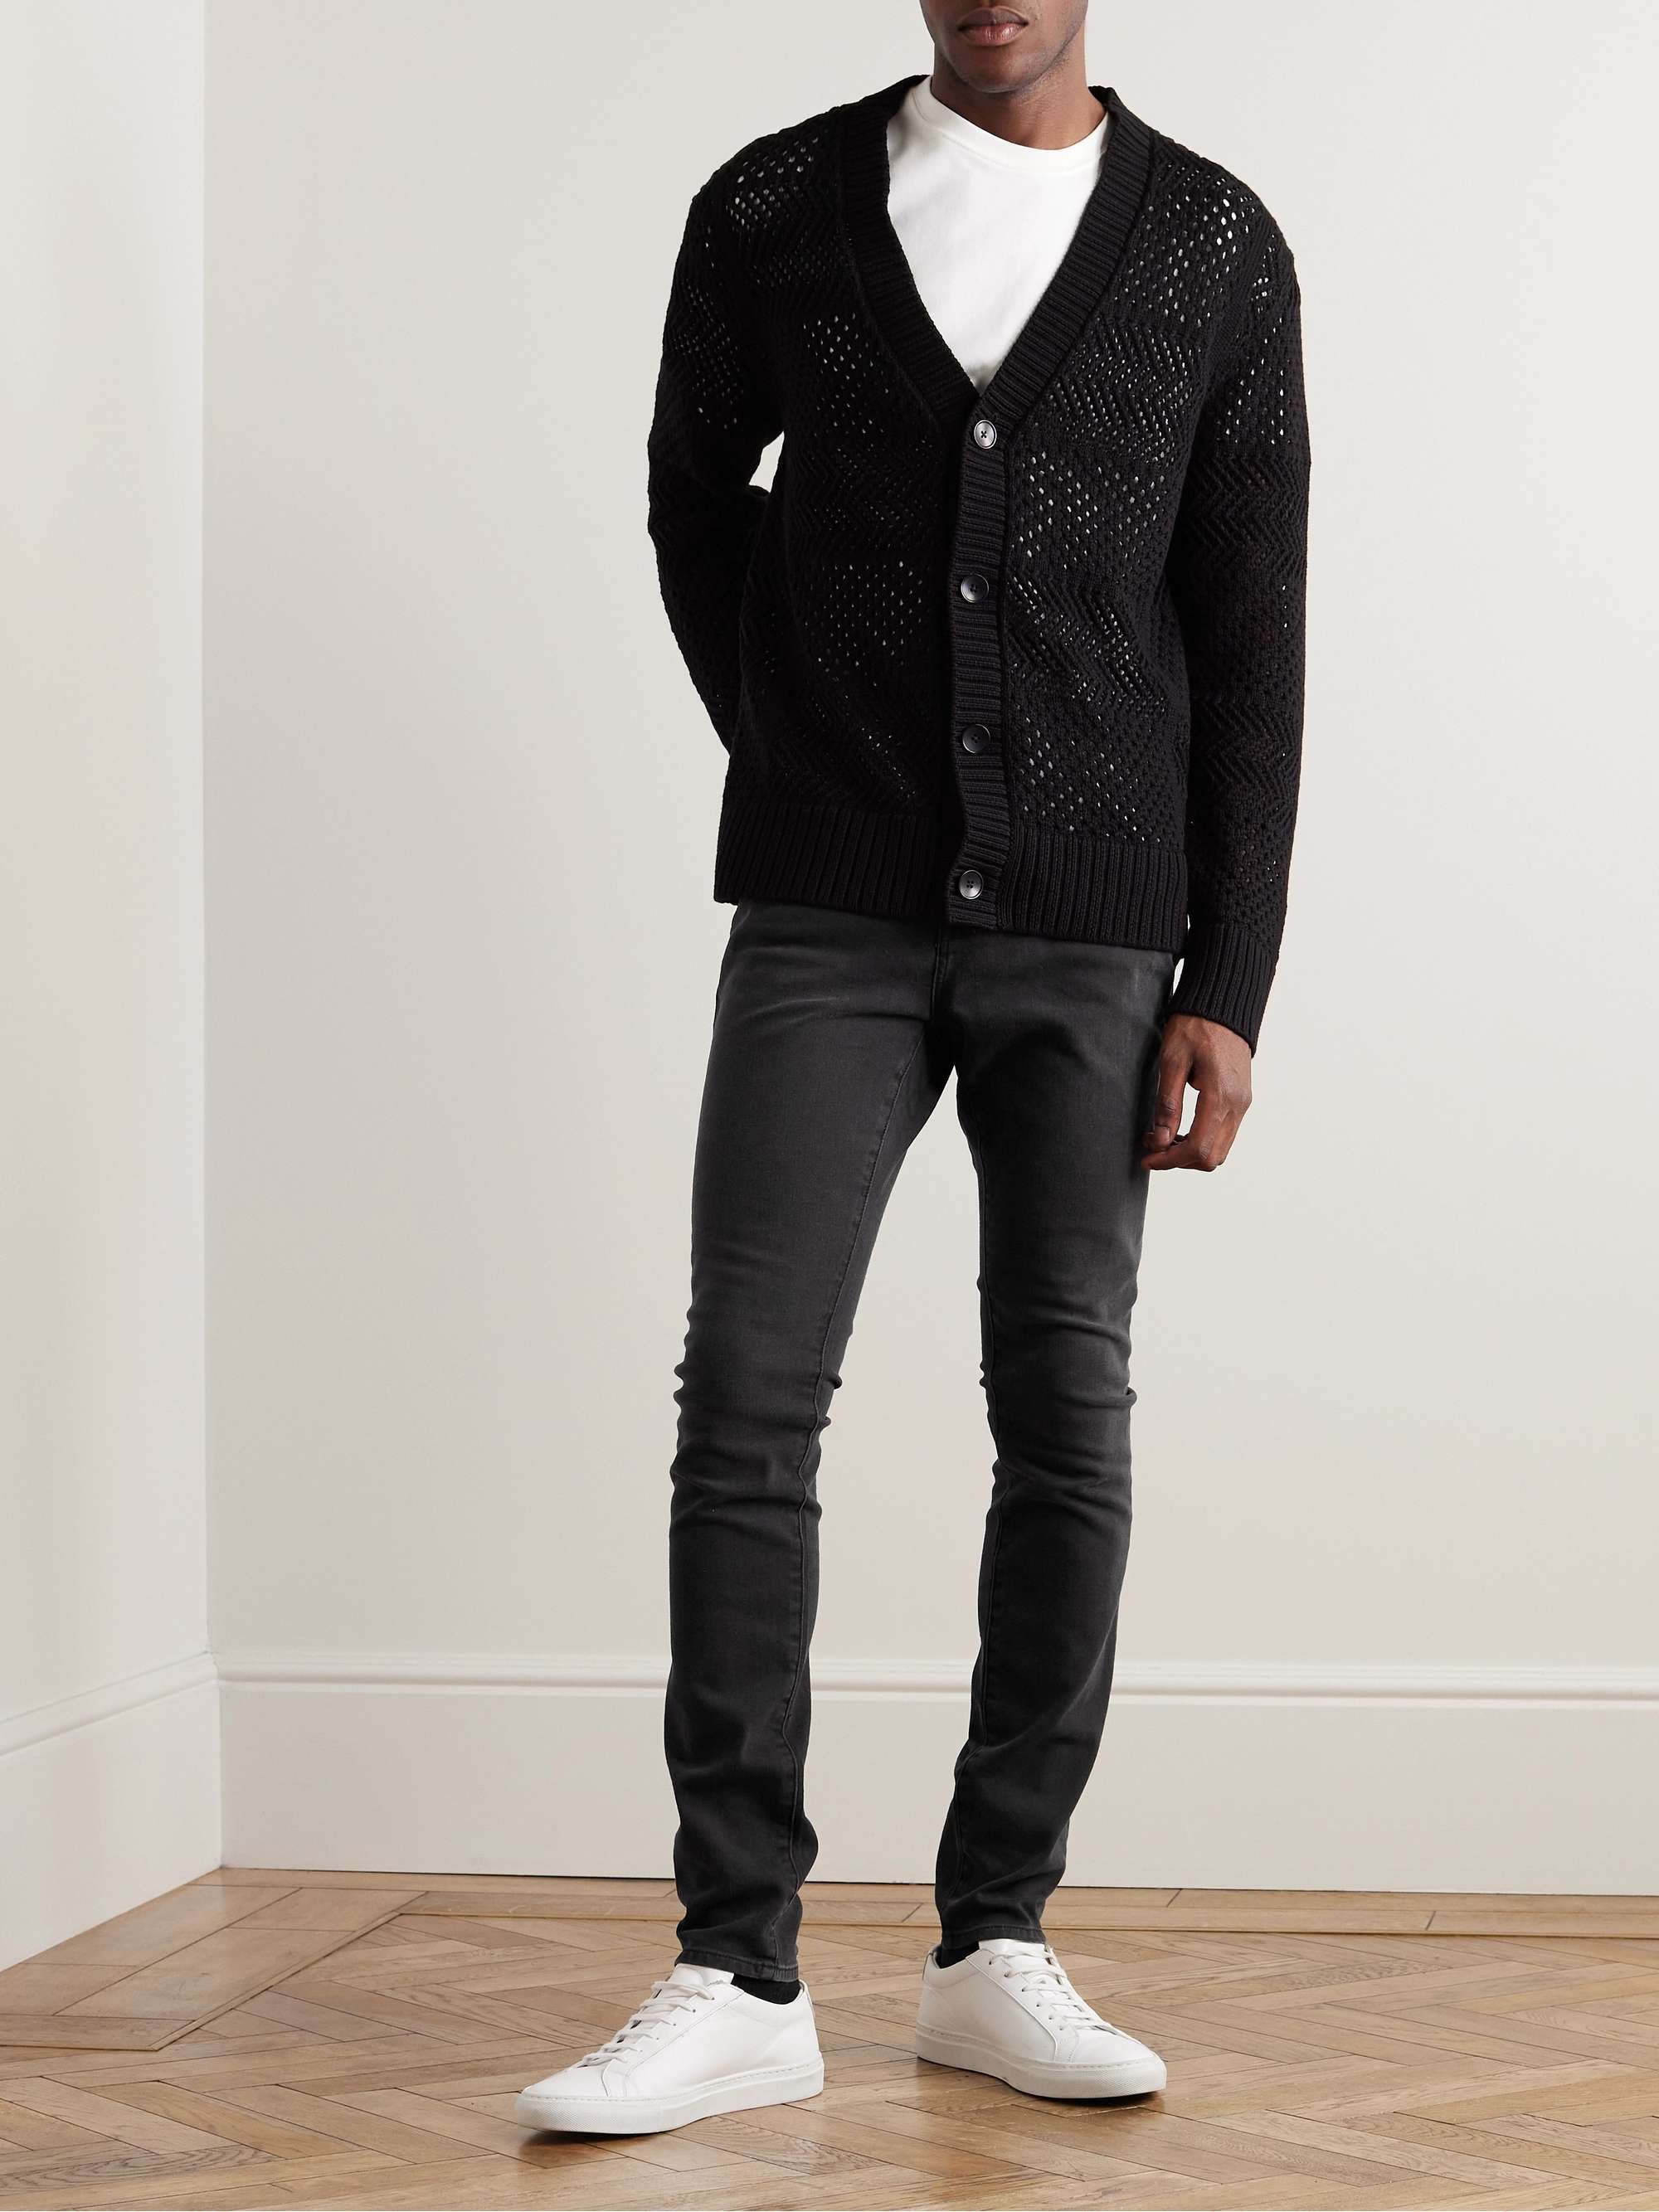 FRAME L'Homme Skinny-Fit Denim Jeans